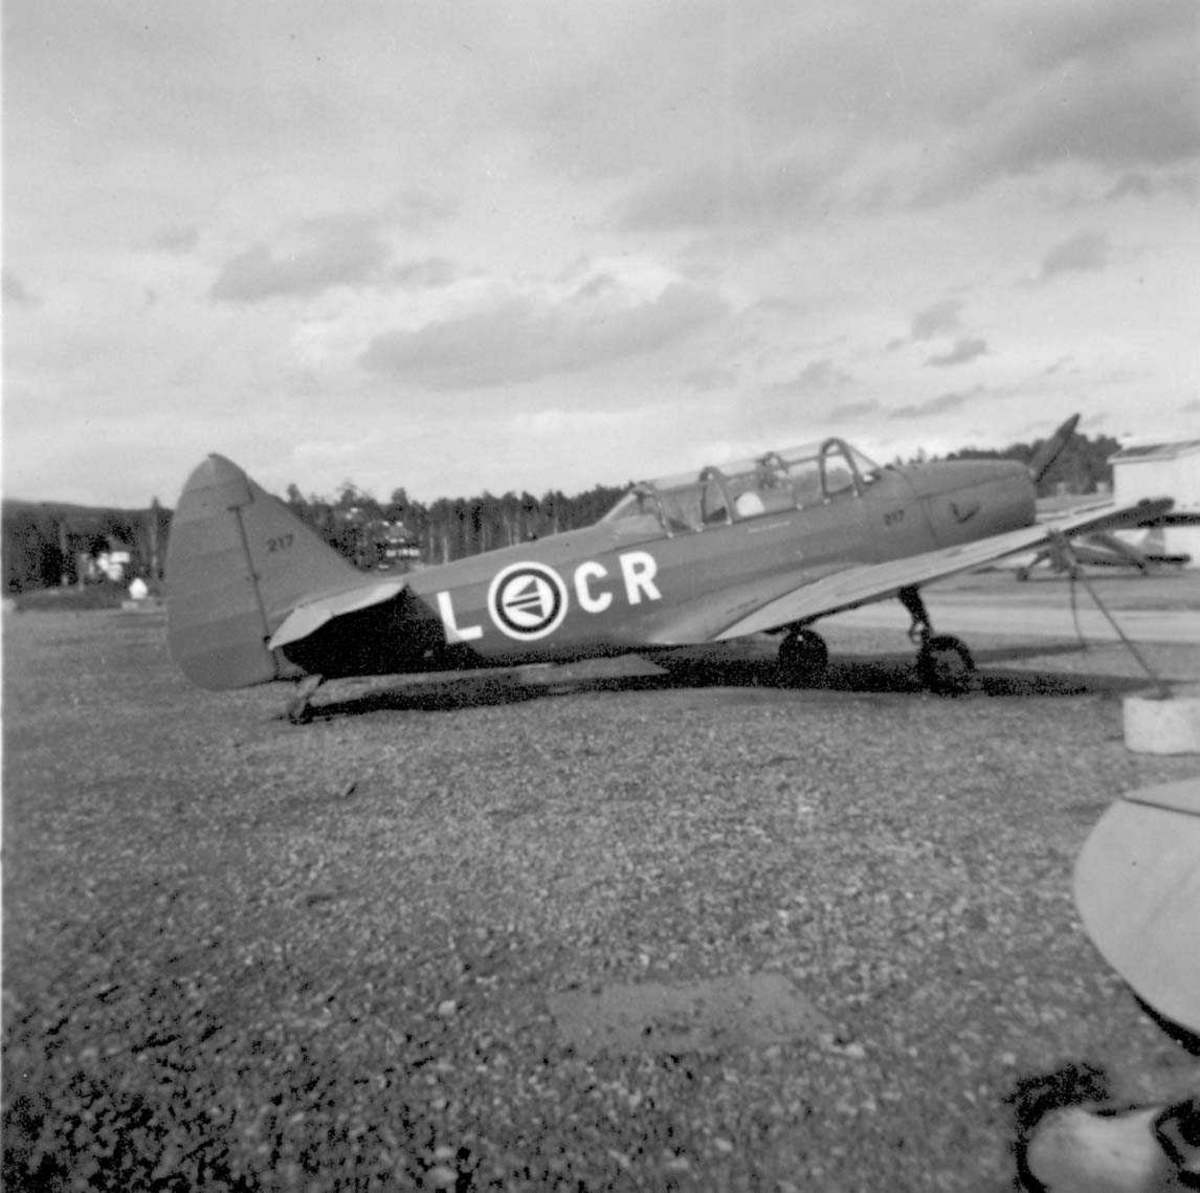 Lufthavn. Ett fly på bakken, Fairchild Cornell PT-26B-FE L-CR "Denmark II" fra RNoAF.